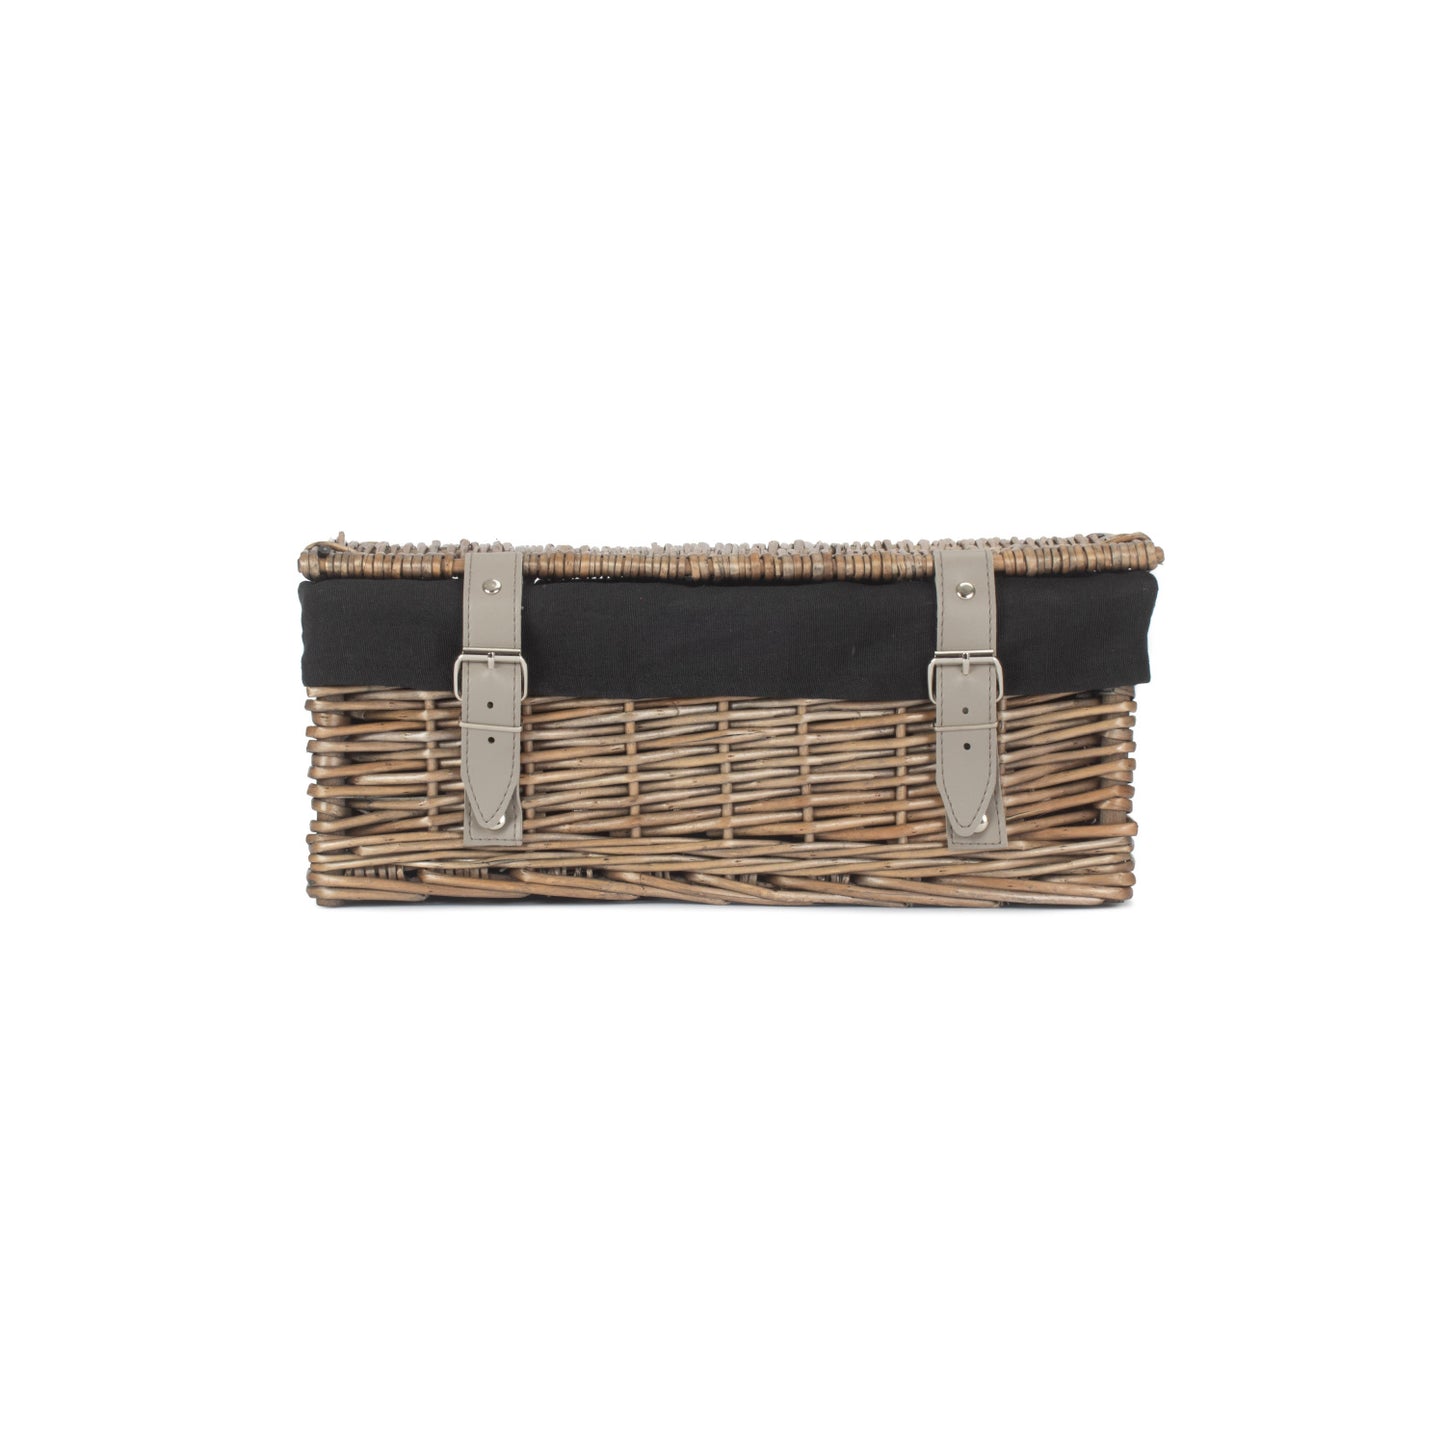 14 Inch Empty Wicker Hamper Basket - Antique Wash - Black Lining